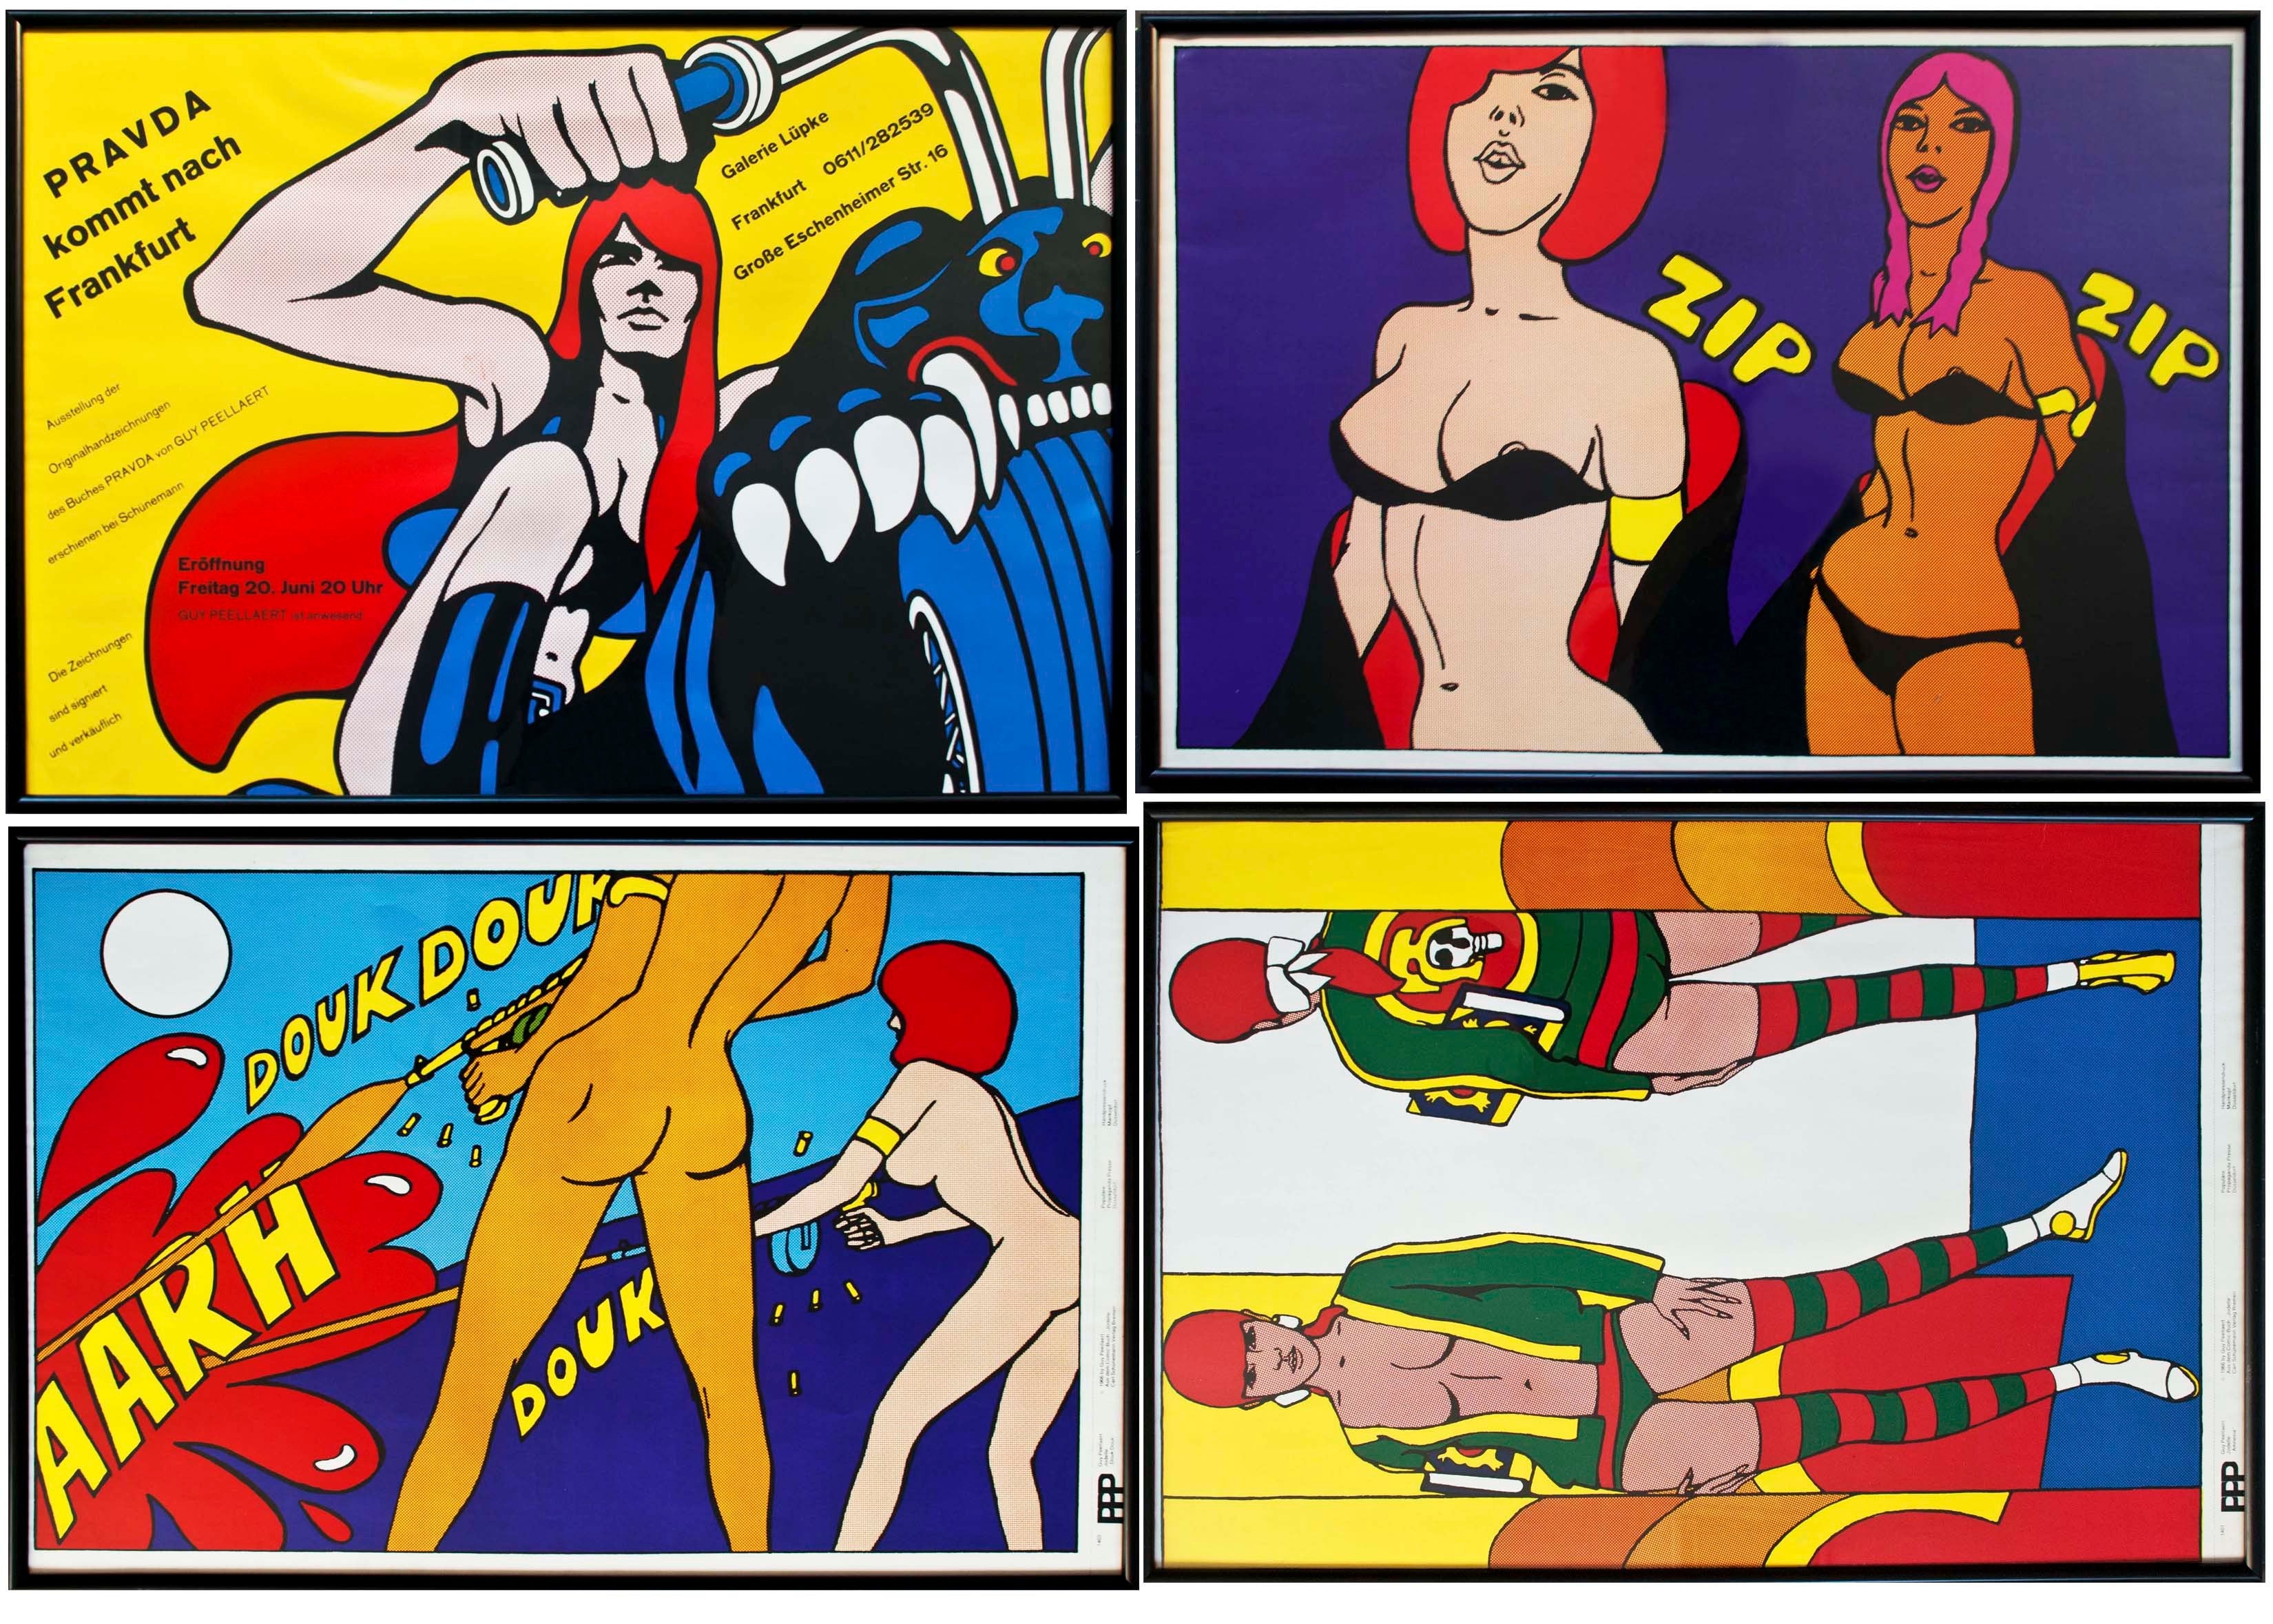 Set of Framed Pop Art posters by Guy Peellaert 1966